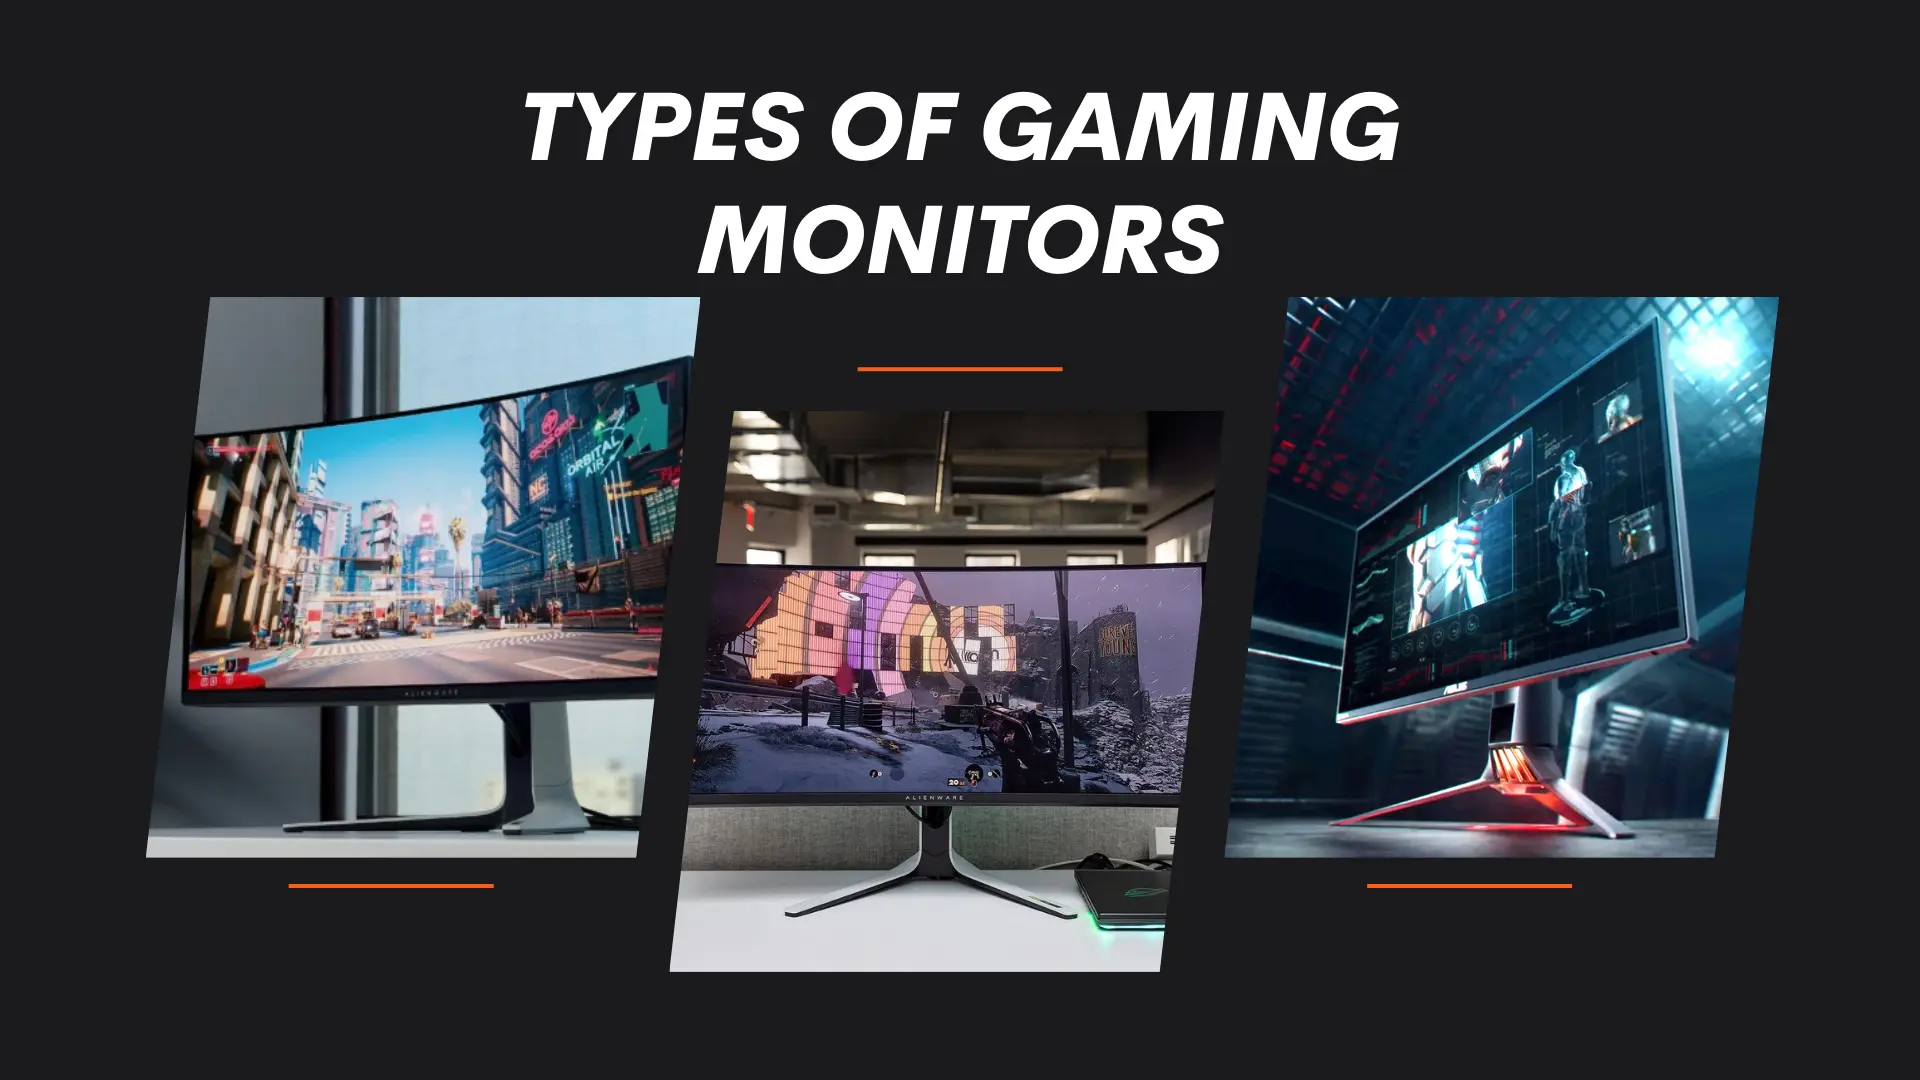 Types of Gaming Monitors